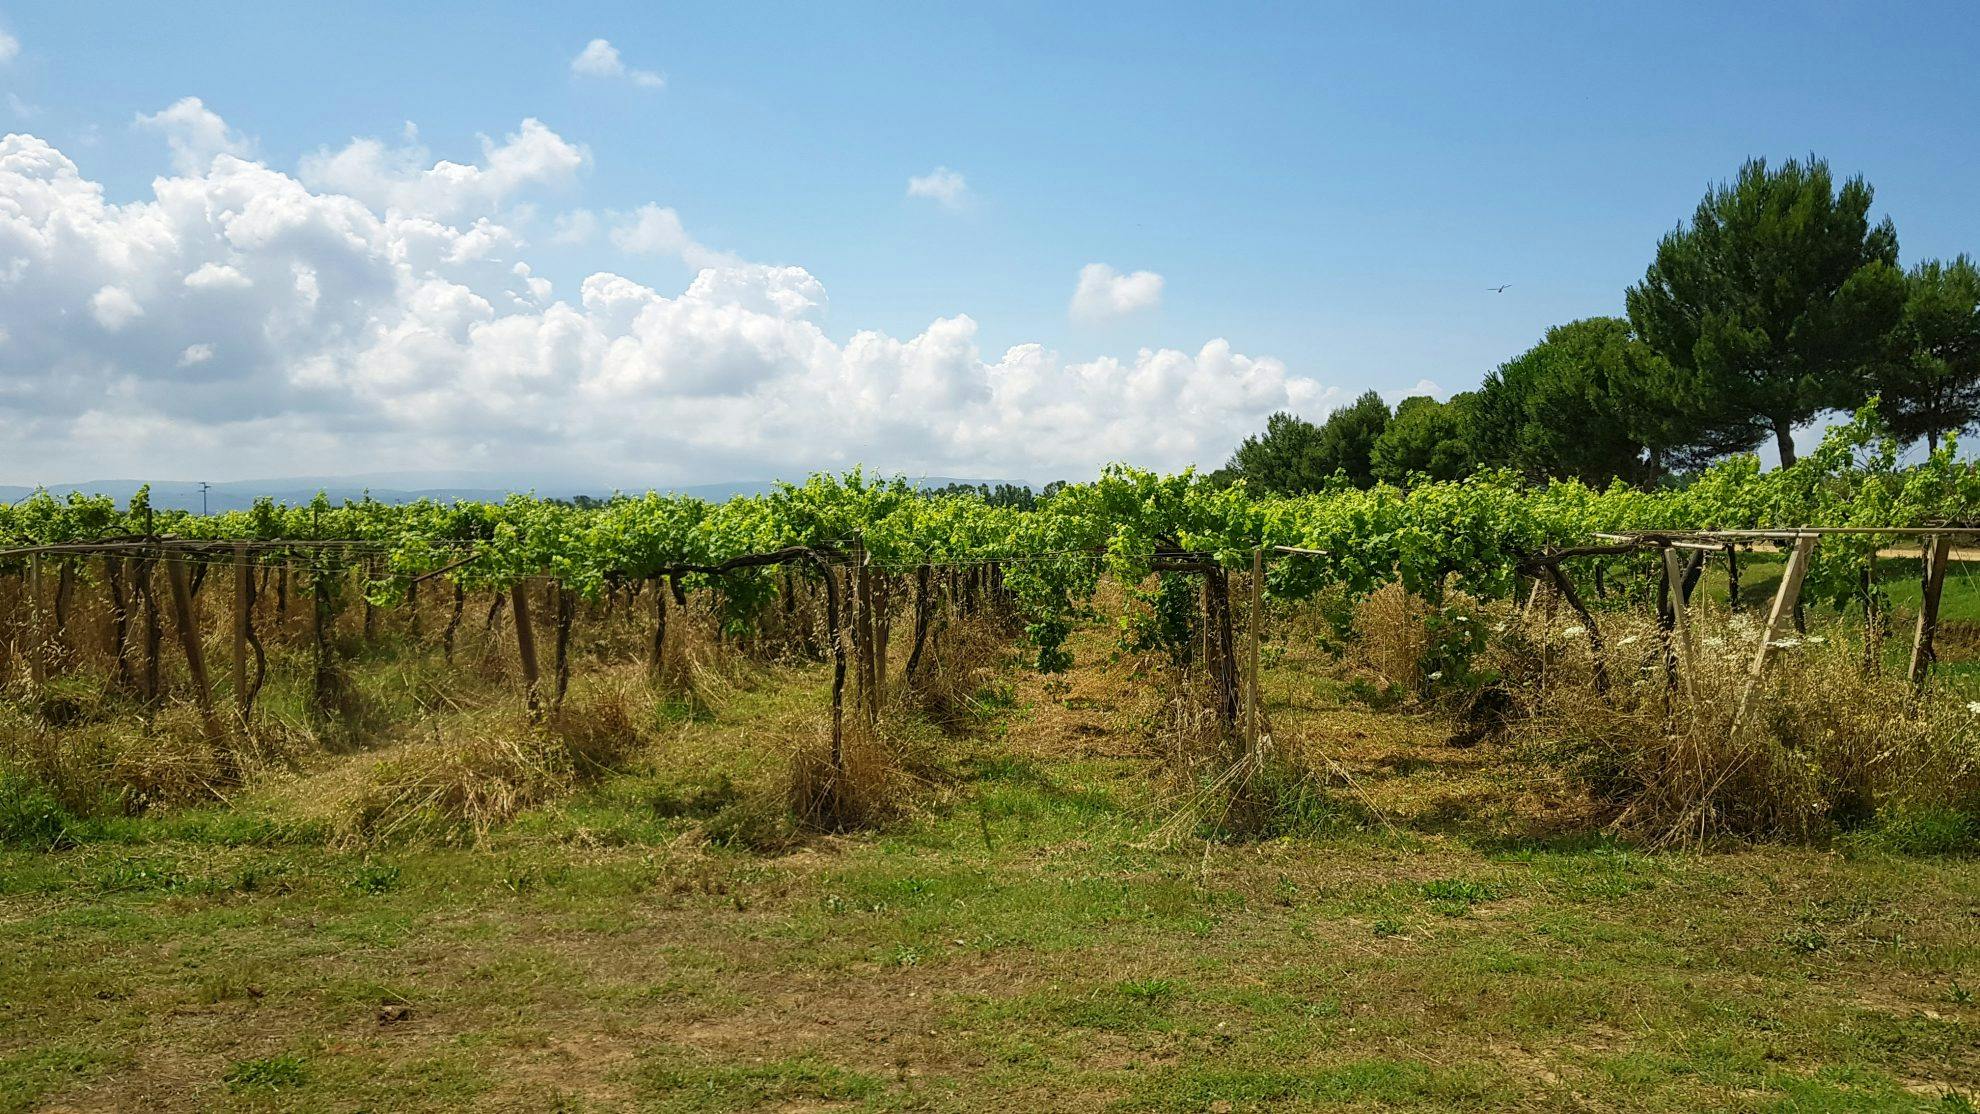 Bland kooperativ, korkar och vingårdar på Sardinien - DinVinguide